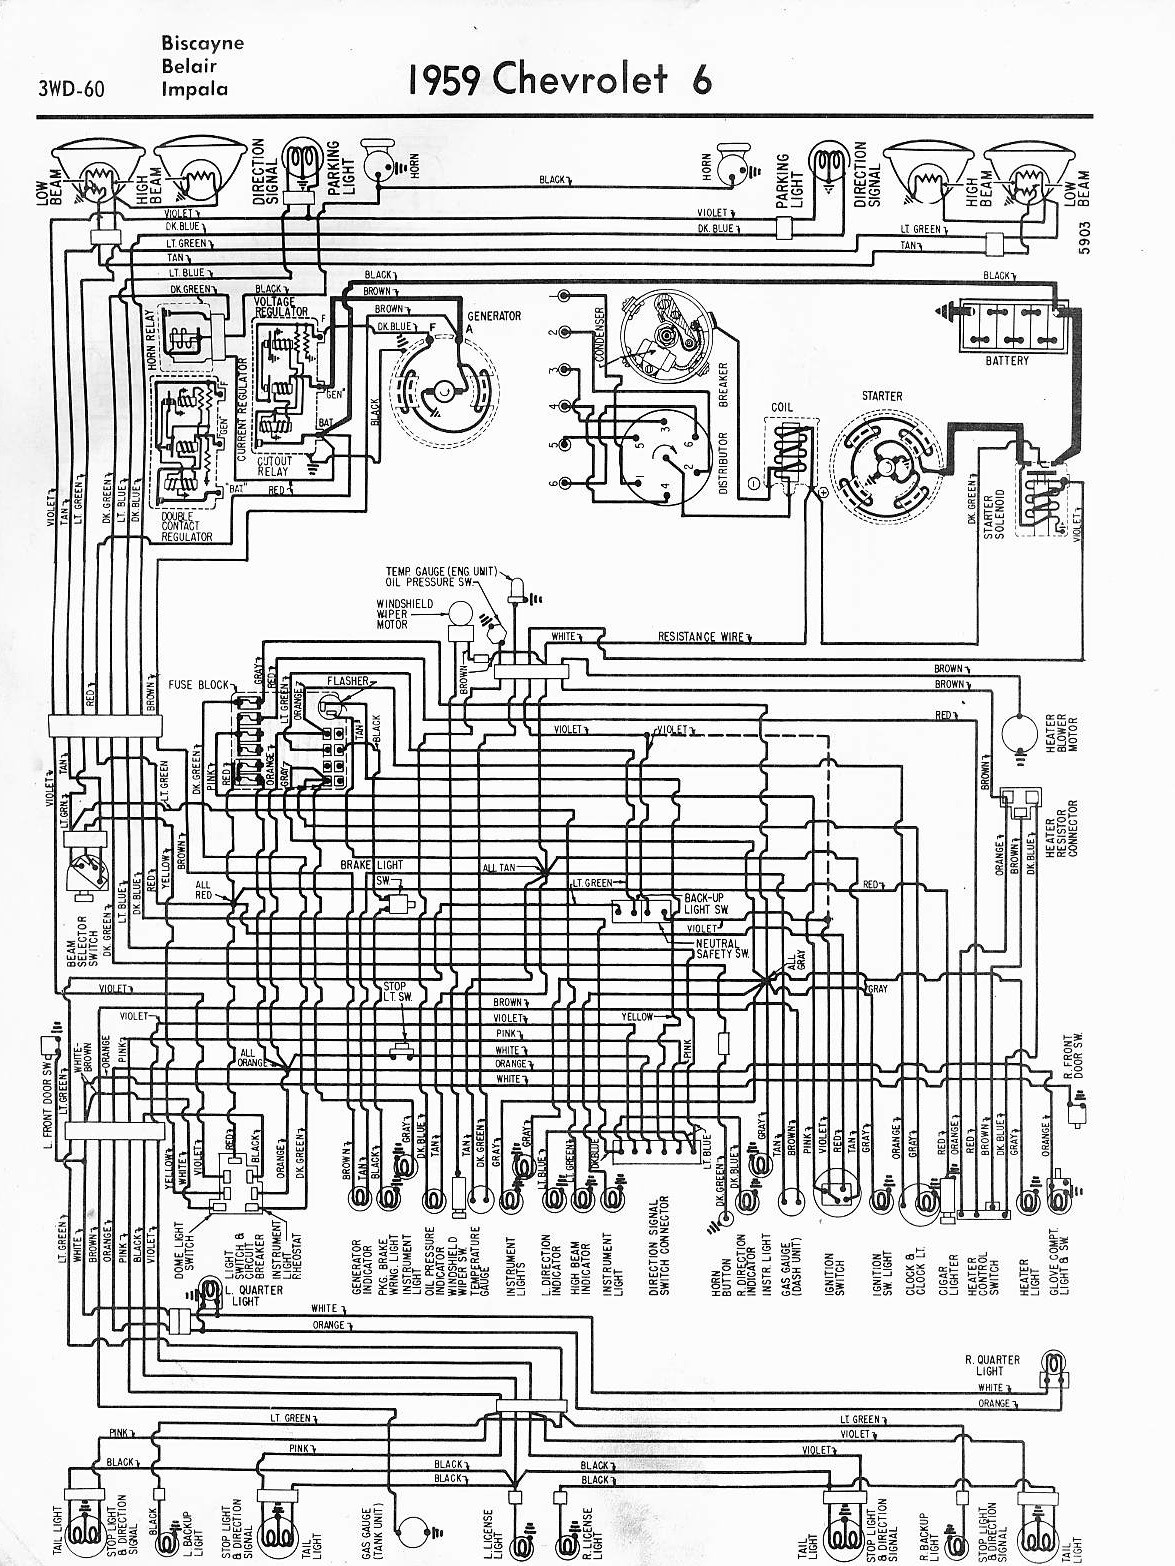 78 Sbc Engine Wiring Diagram Wiring Diagrams 59-60, 64-88 El Camino Central forum Of 78 Sbc Engine Wiring Diagram